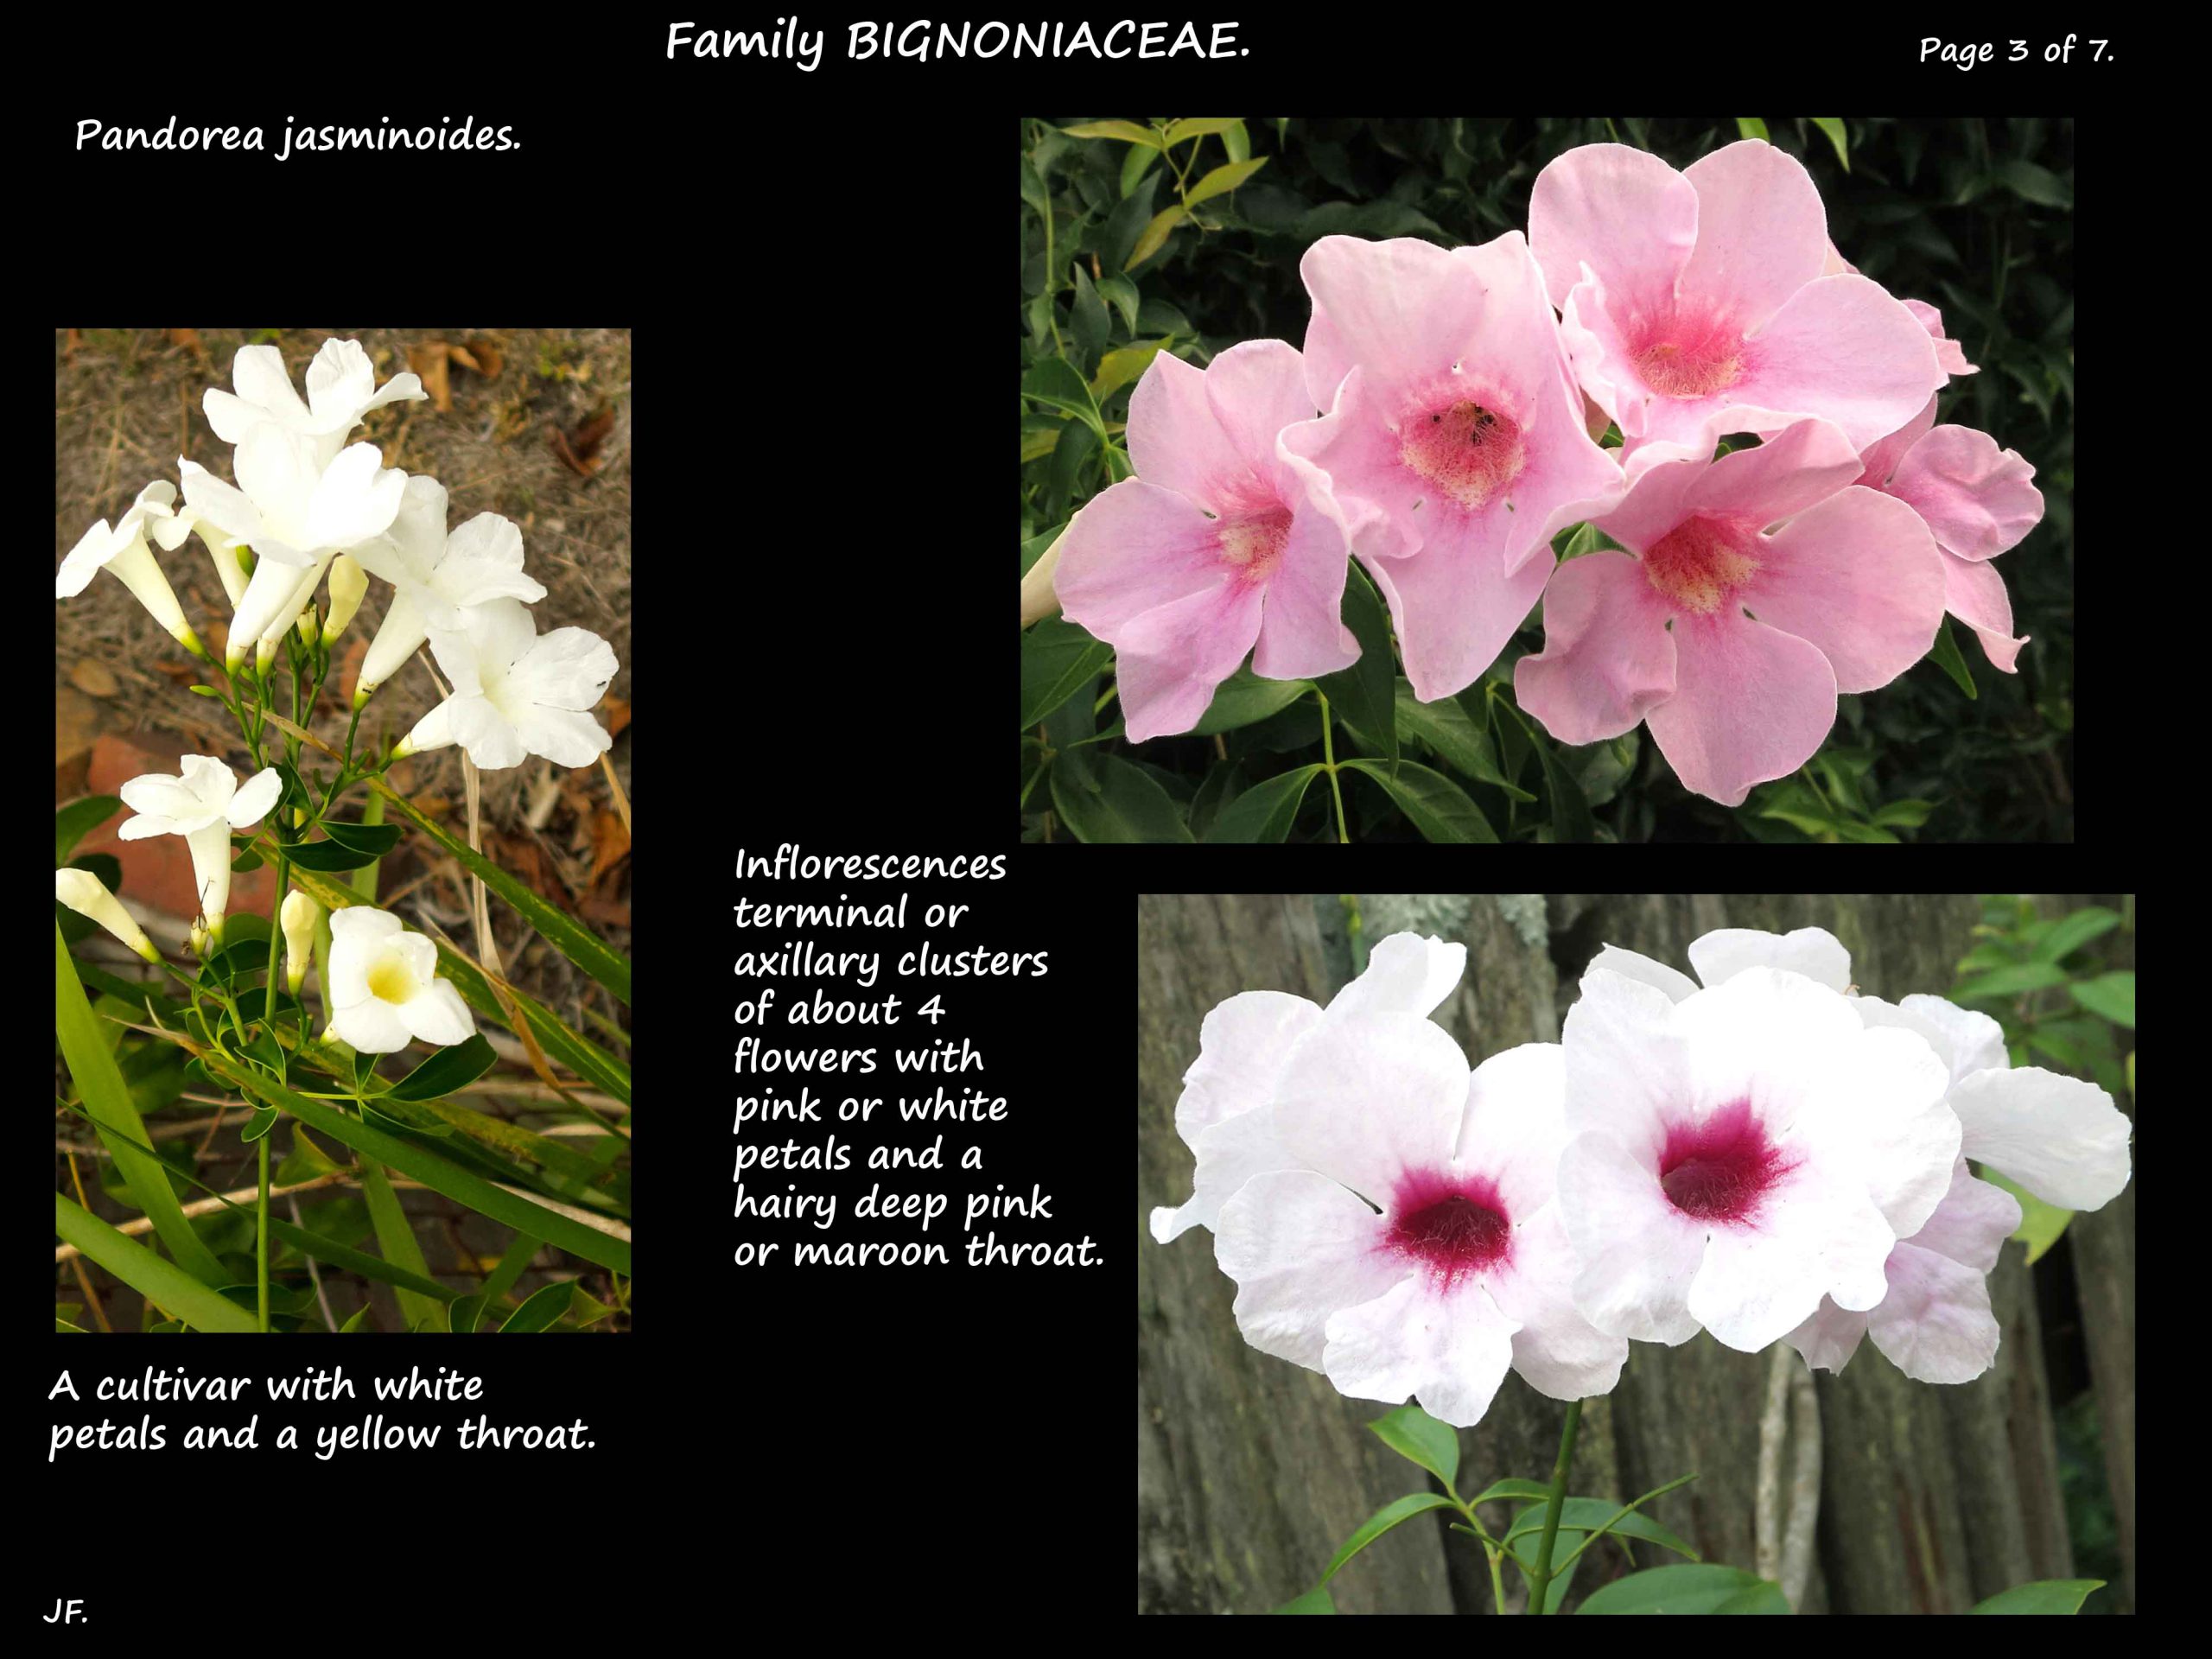 3 Pandorea jasminoides flowers